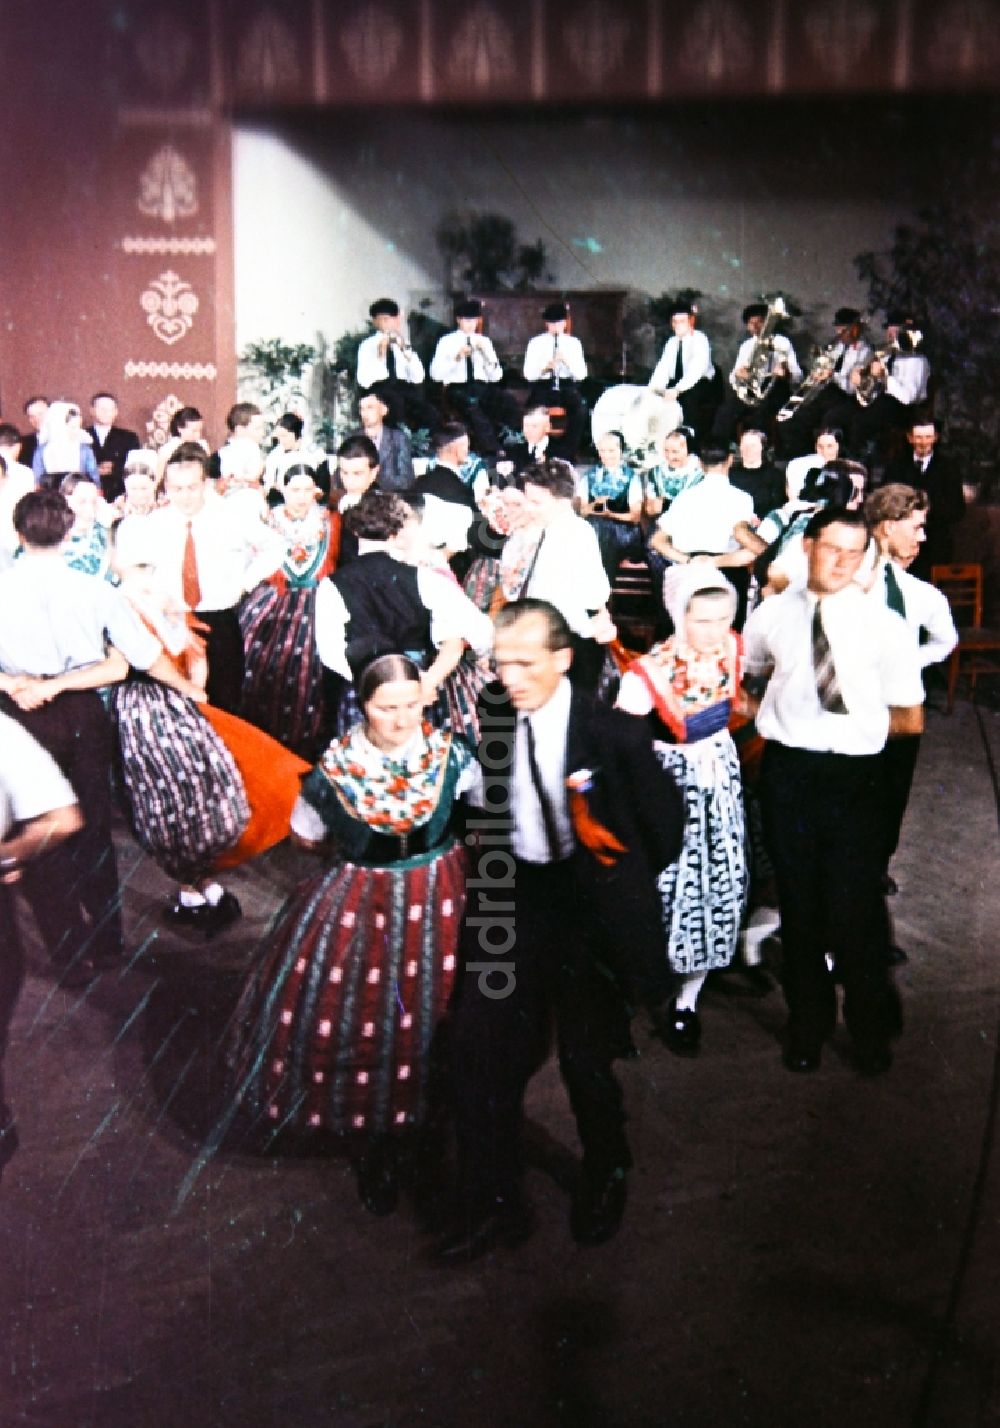 Milkel: Hochzeit sorbischer Einwohner in Milkel in Sachsen in der DDR